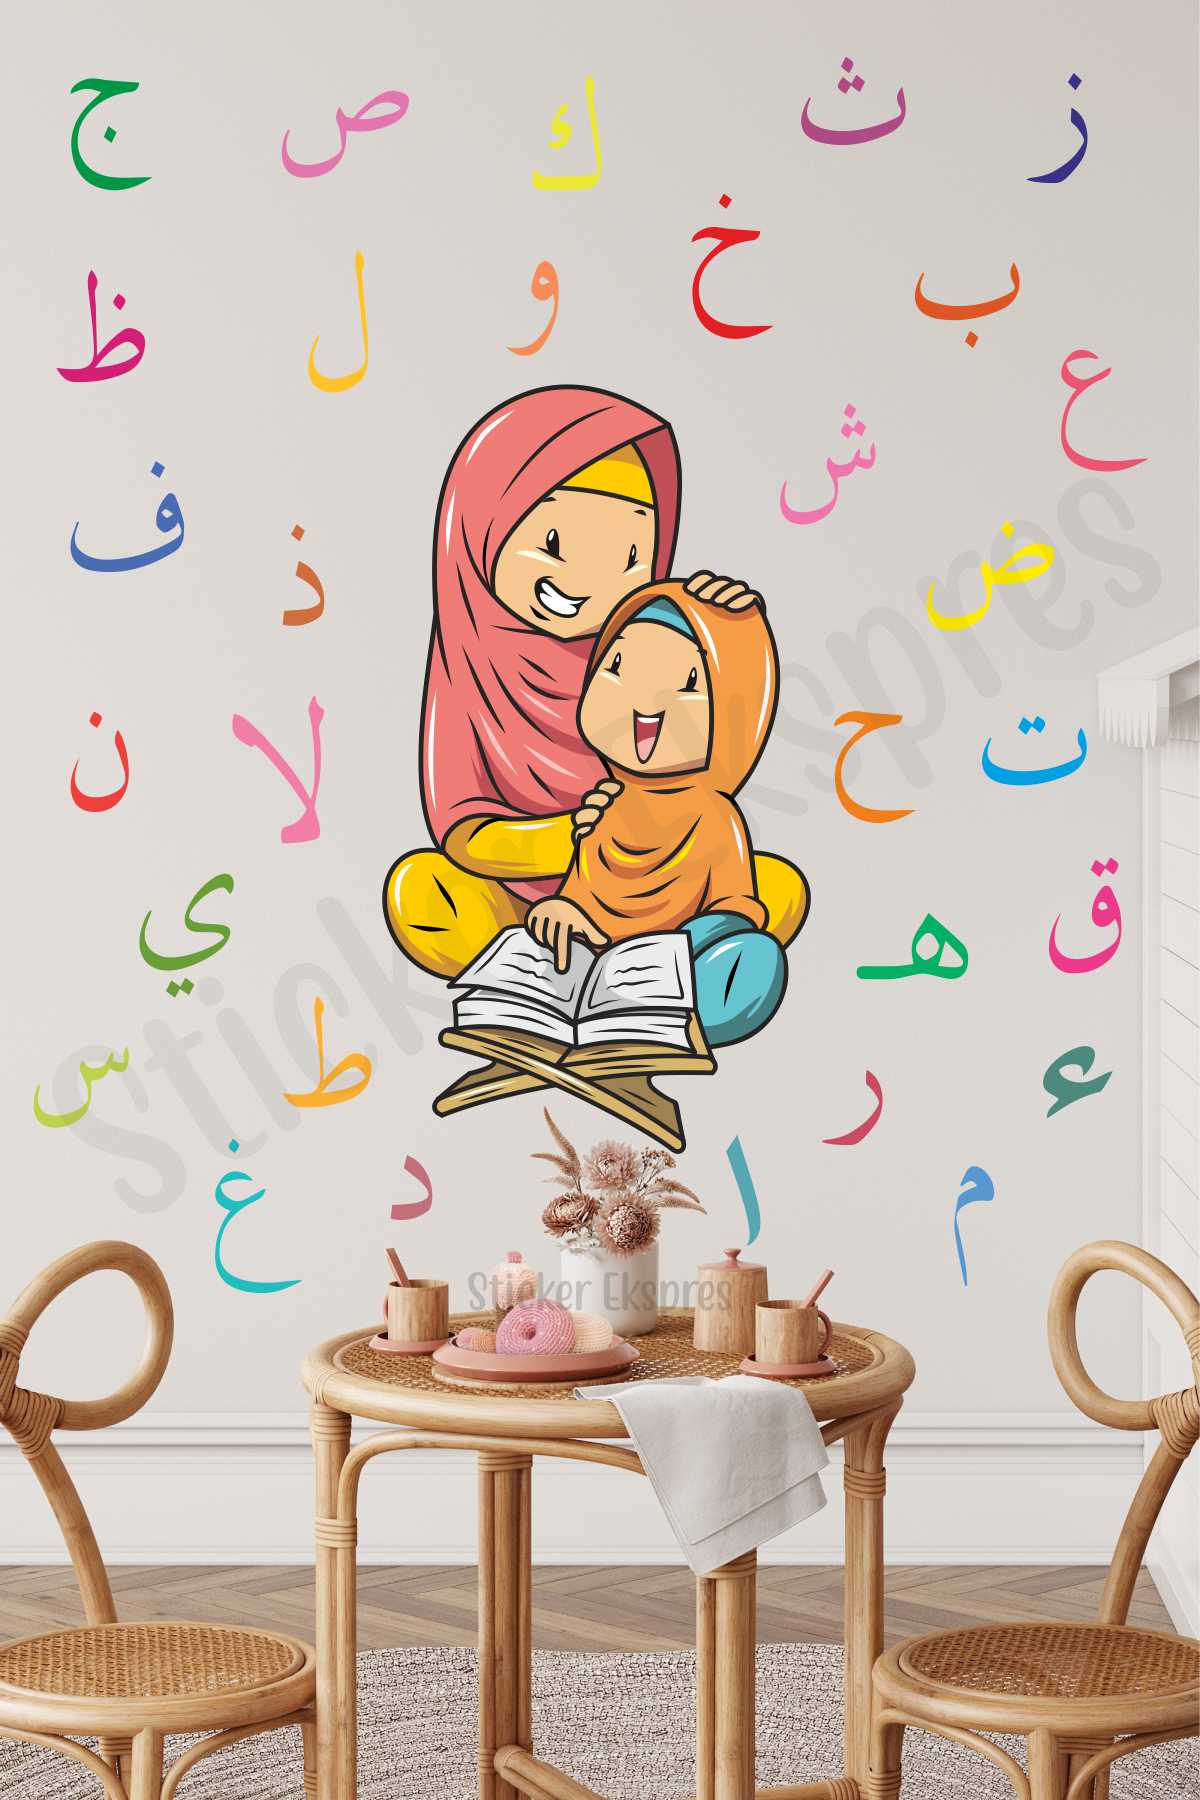 Elif Ba Öğrenen Kız Çocuk Eğitici Ramazan Duvar Kapı Cam Sticker Seti